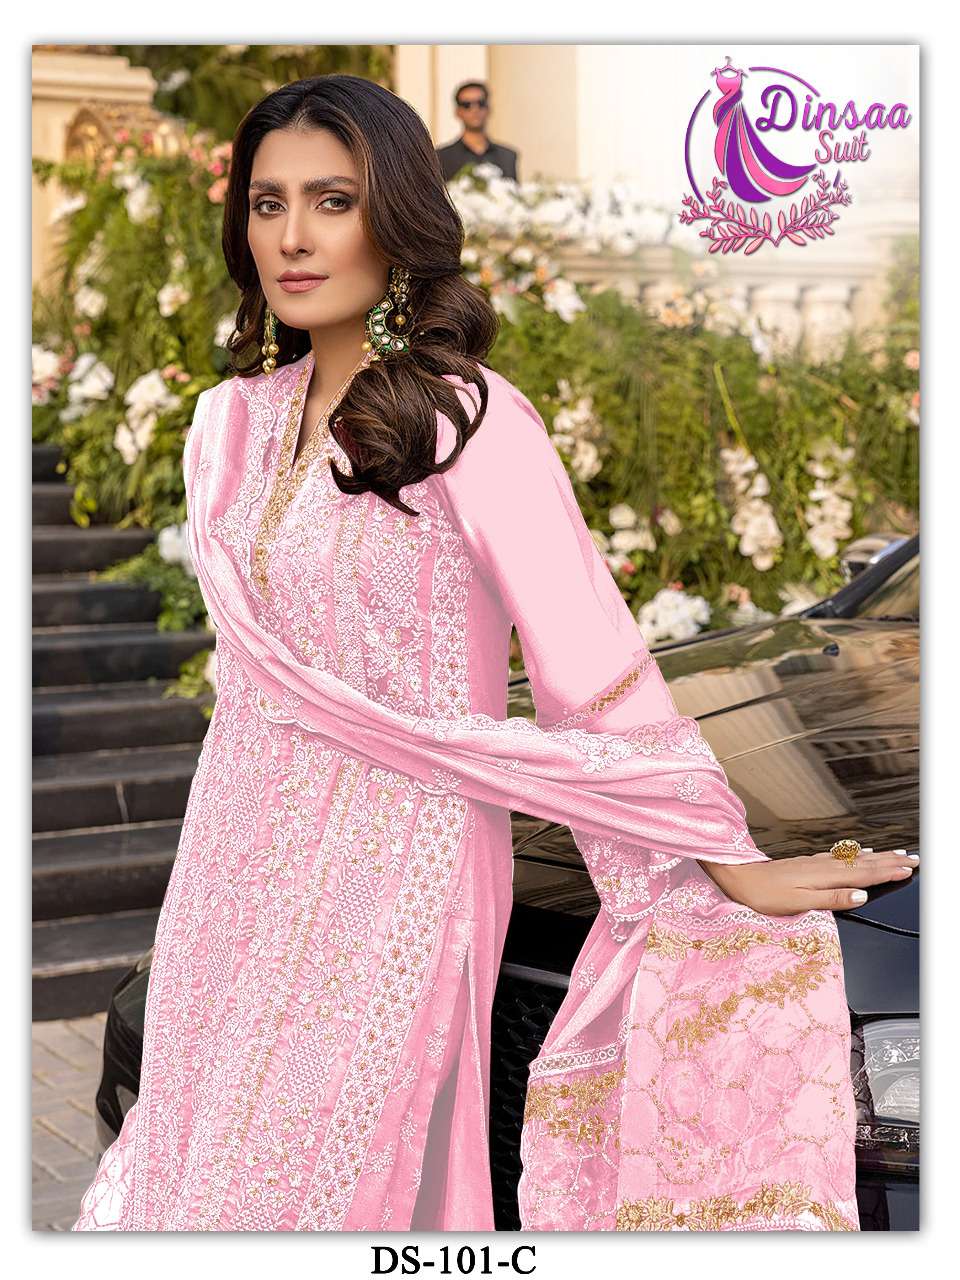 dinsaa suits 101 colour edition salwar kameez wholesale price surat